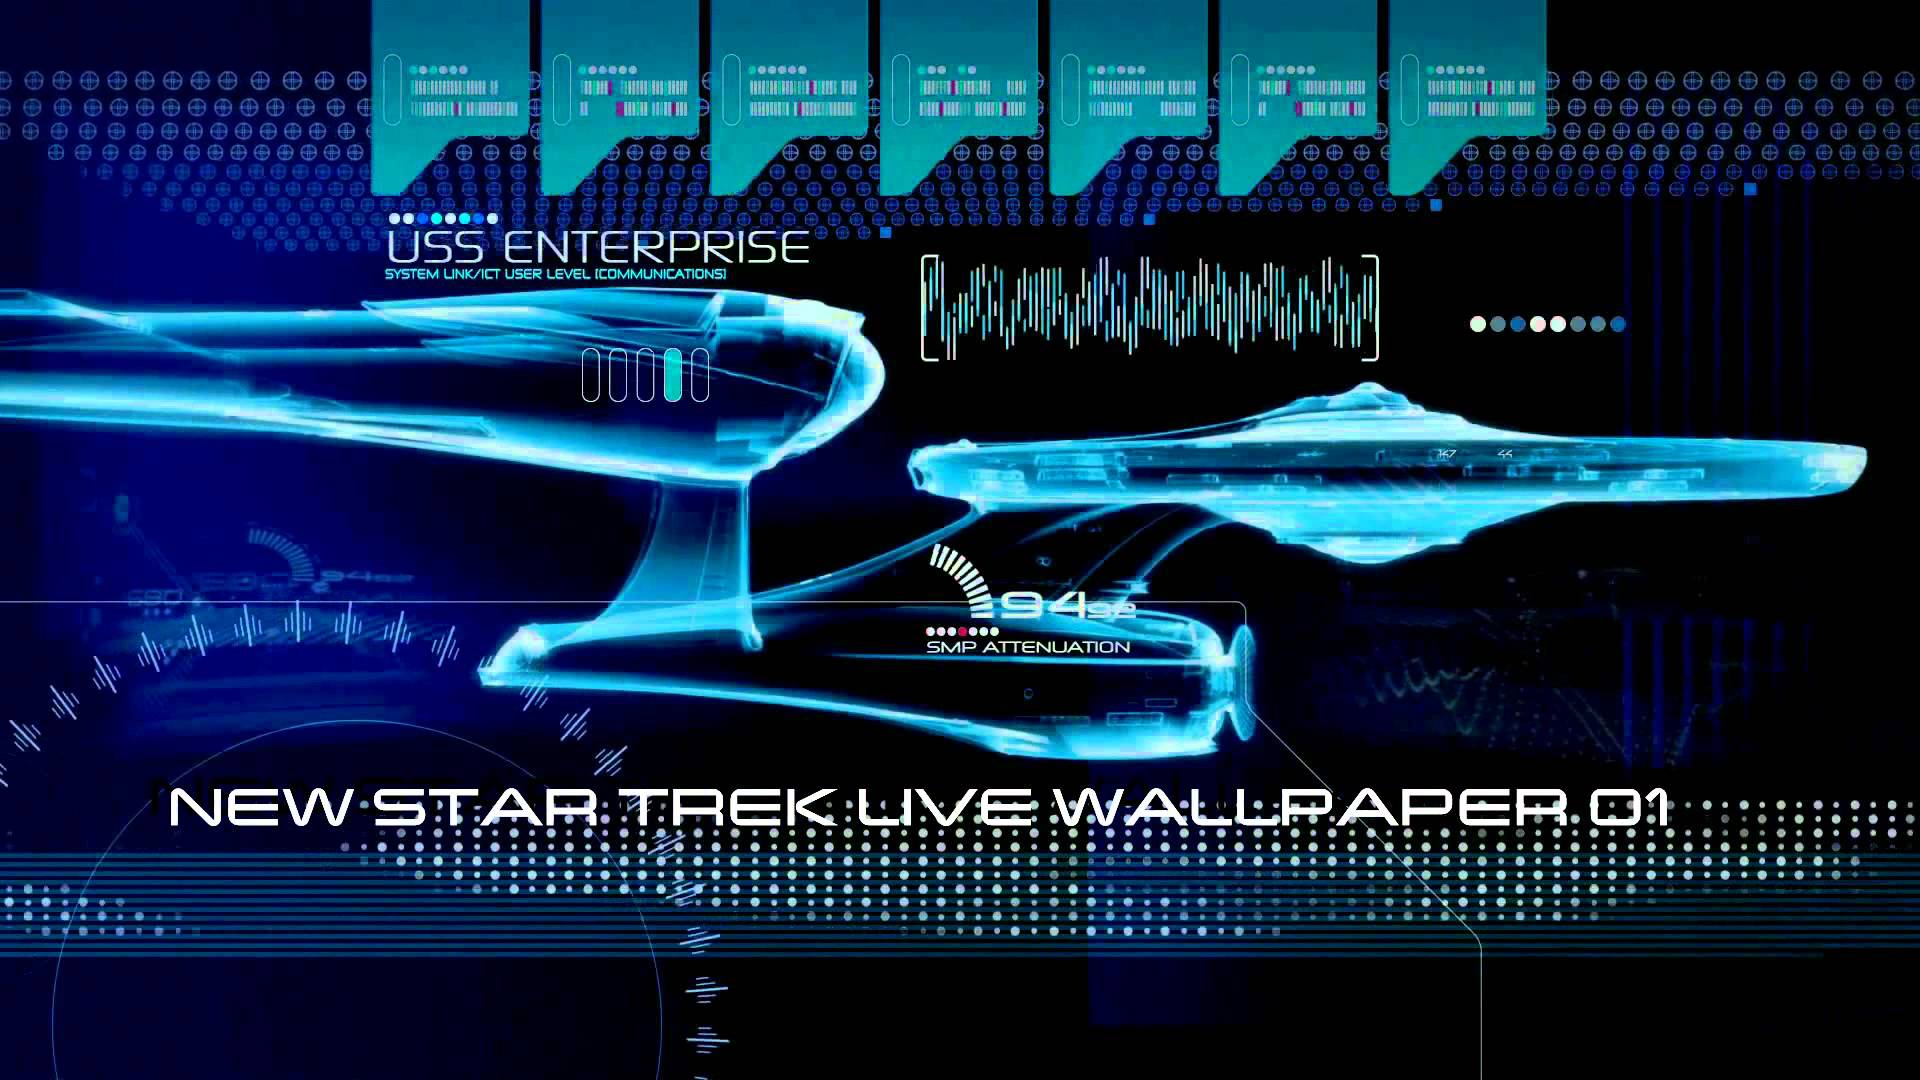 New Star Trek Live Wallpaper 01 - YouTube